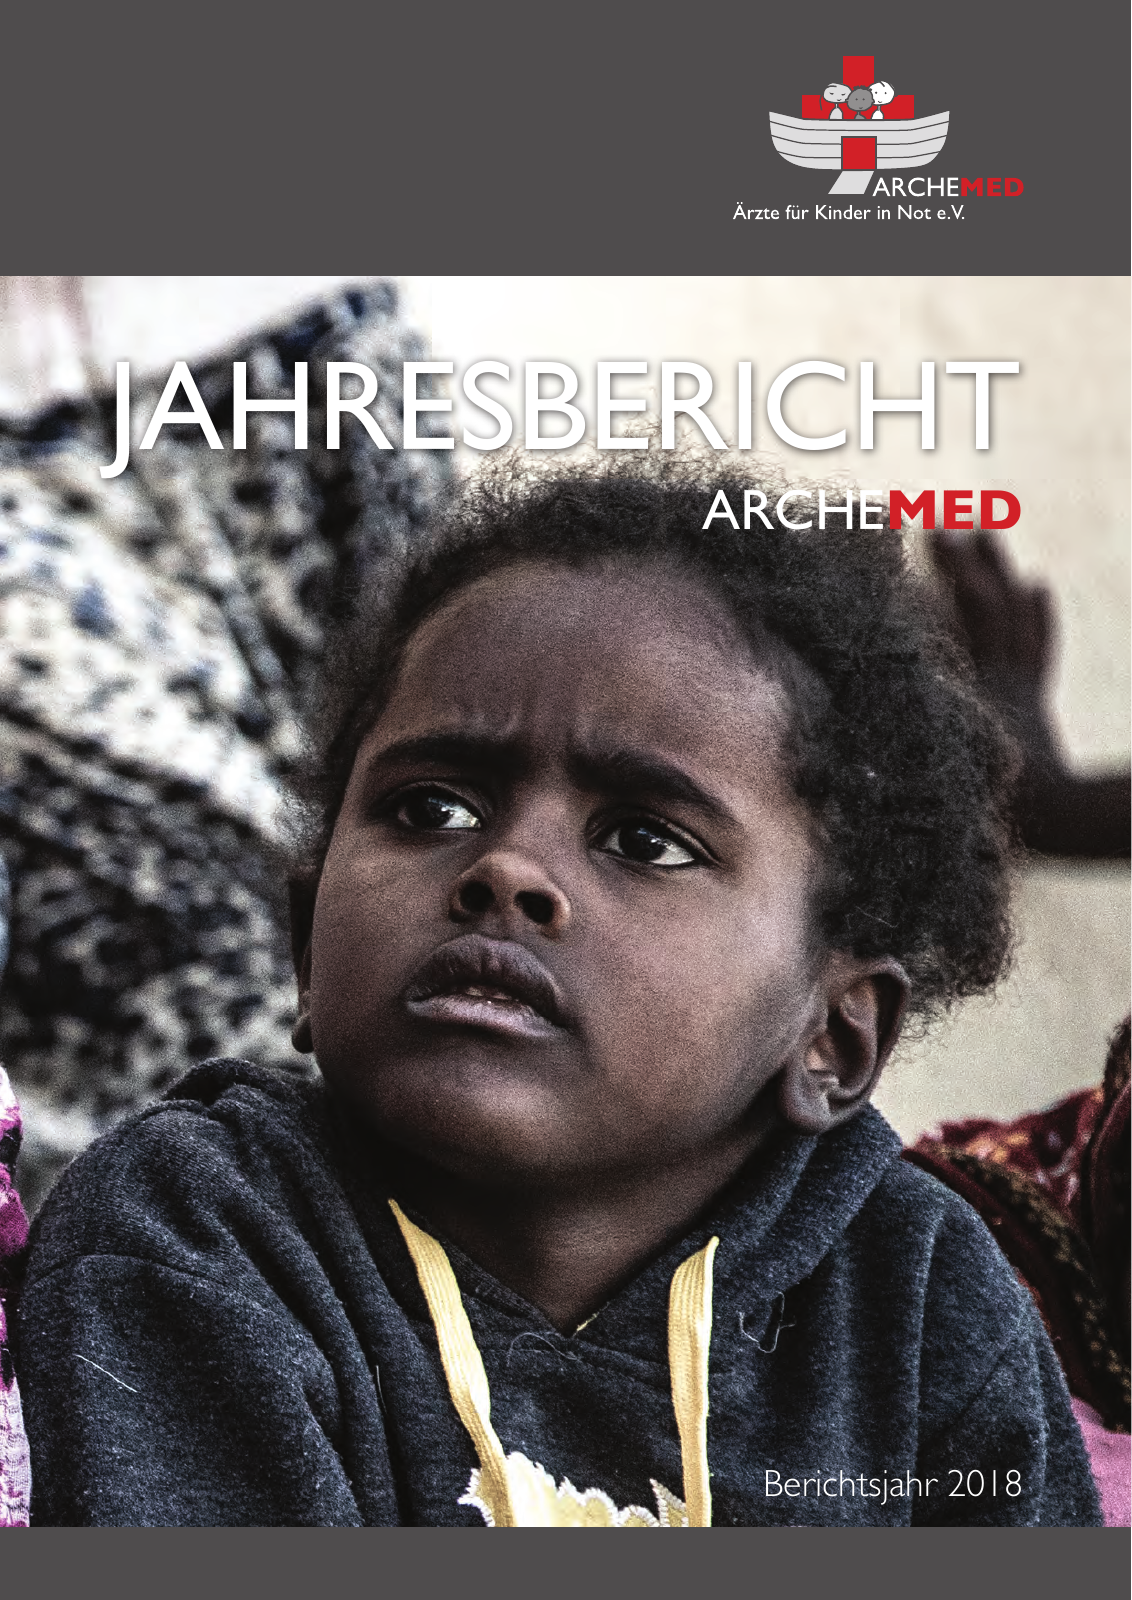 Vorschau ARCHEMED – Ärzte für Kinder in Not e.V. - Jahresbericht 2018 Seite 1